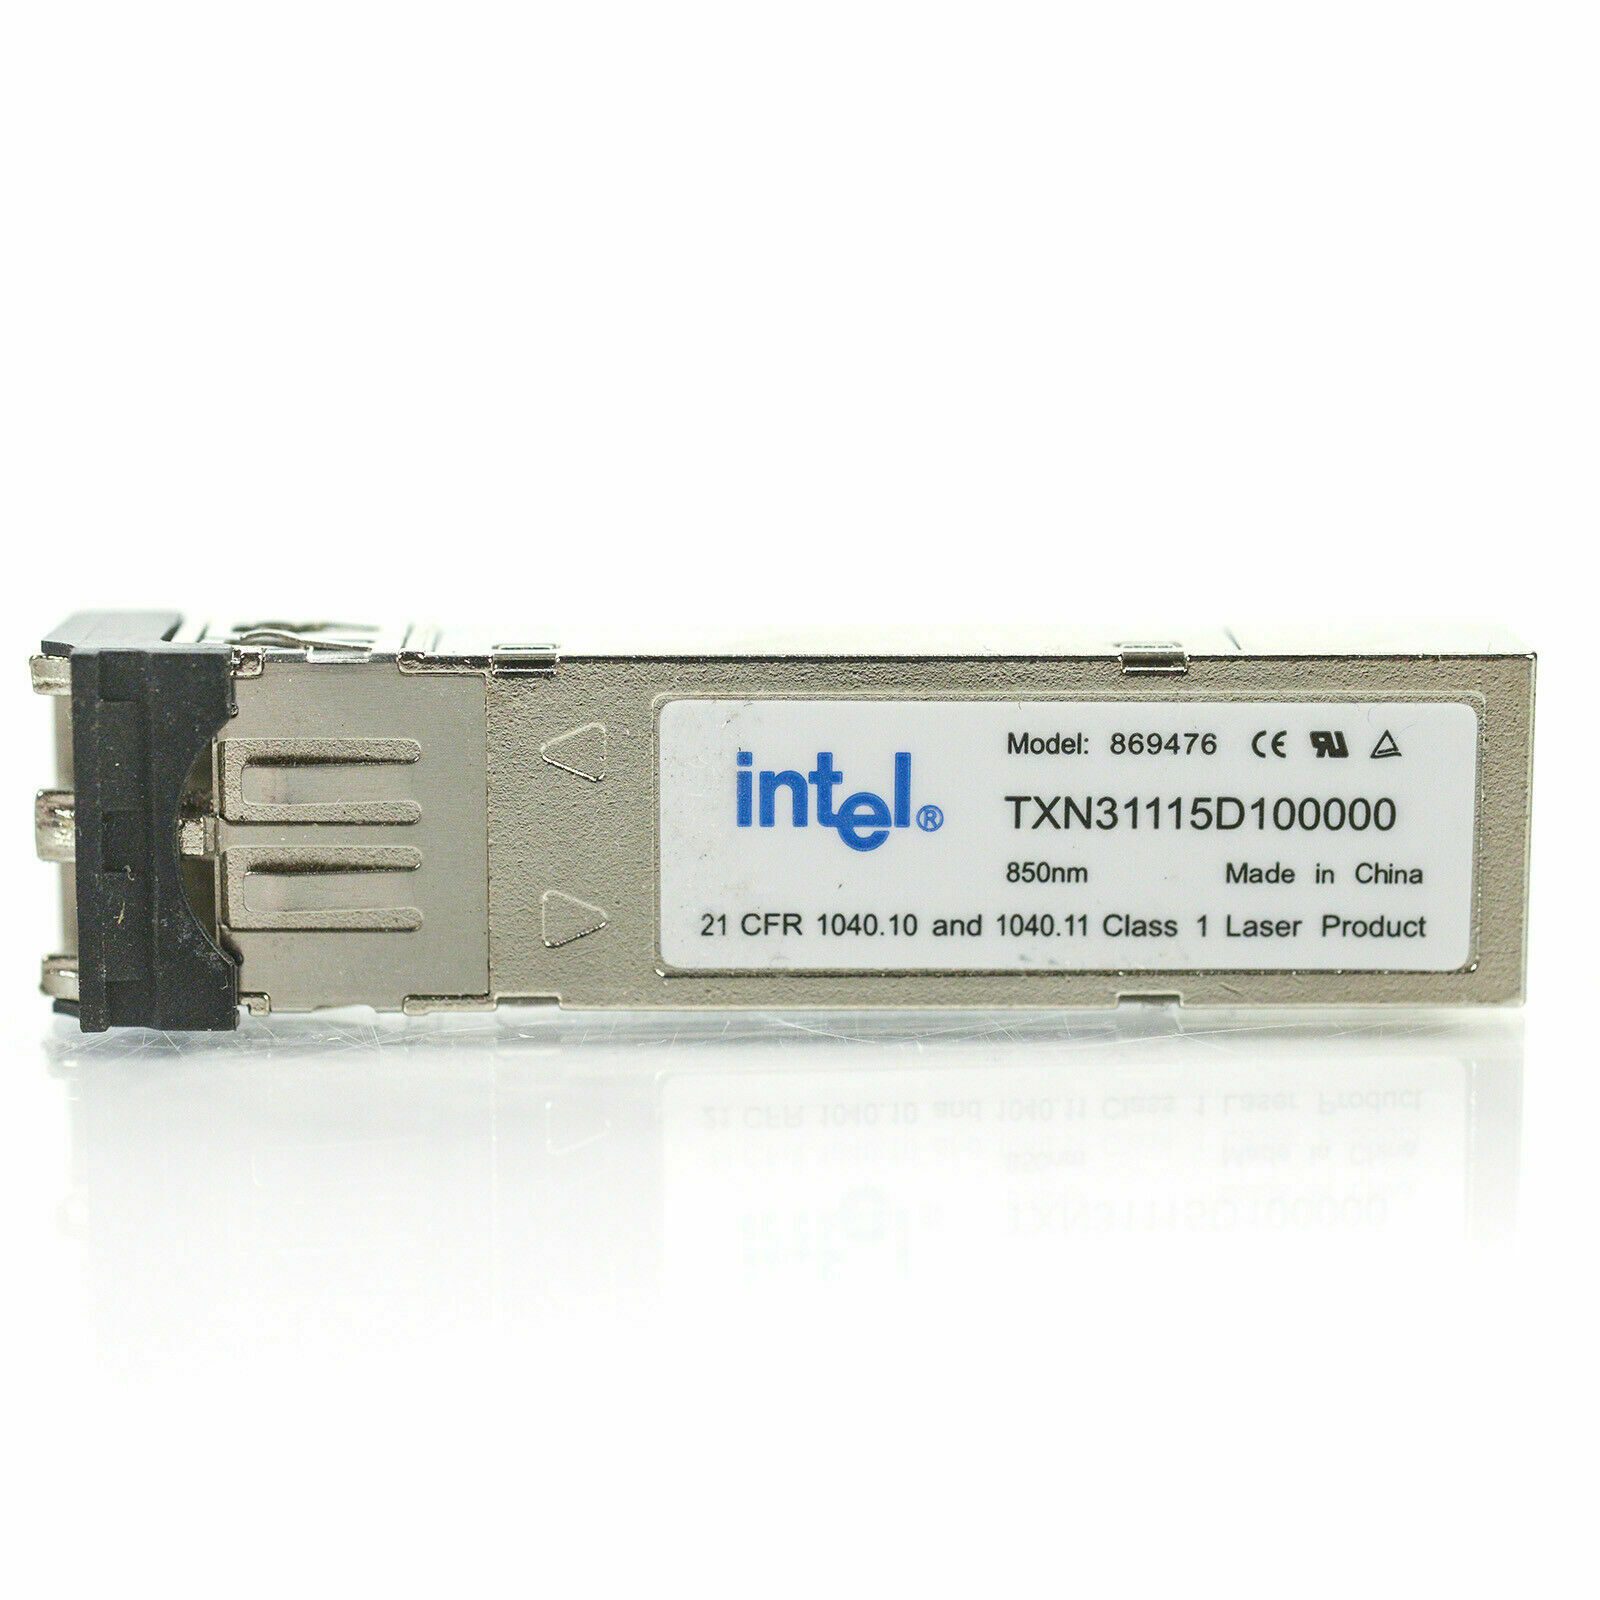 Intel 869476 TXN31115D100000 4 GB 850 nm SX SFP Kurzwellen-GBIC-Transceiver-Modul